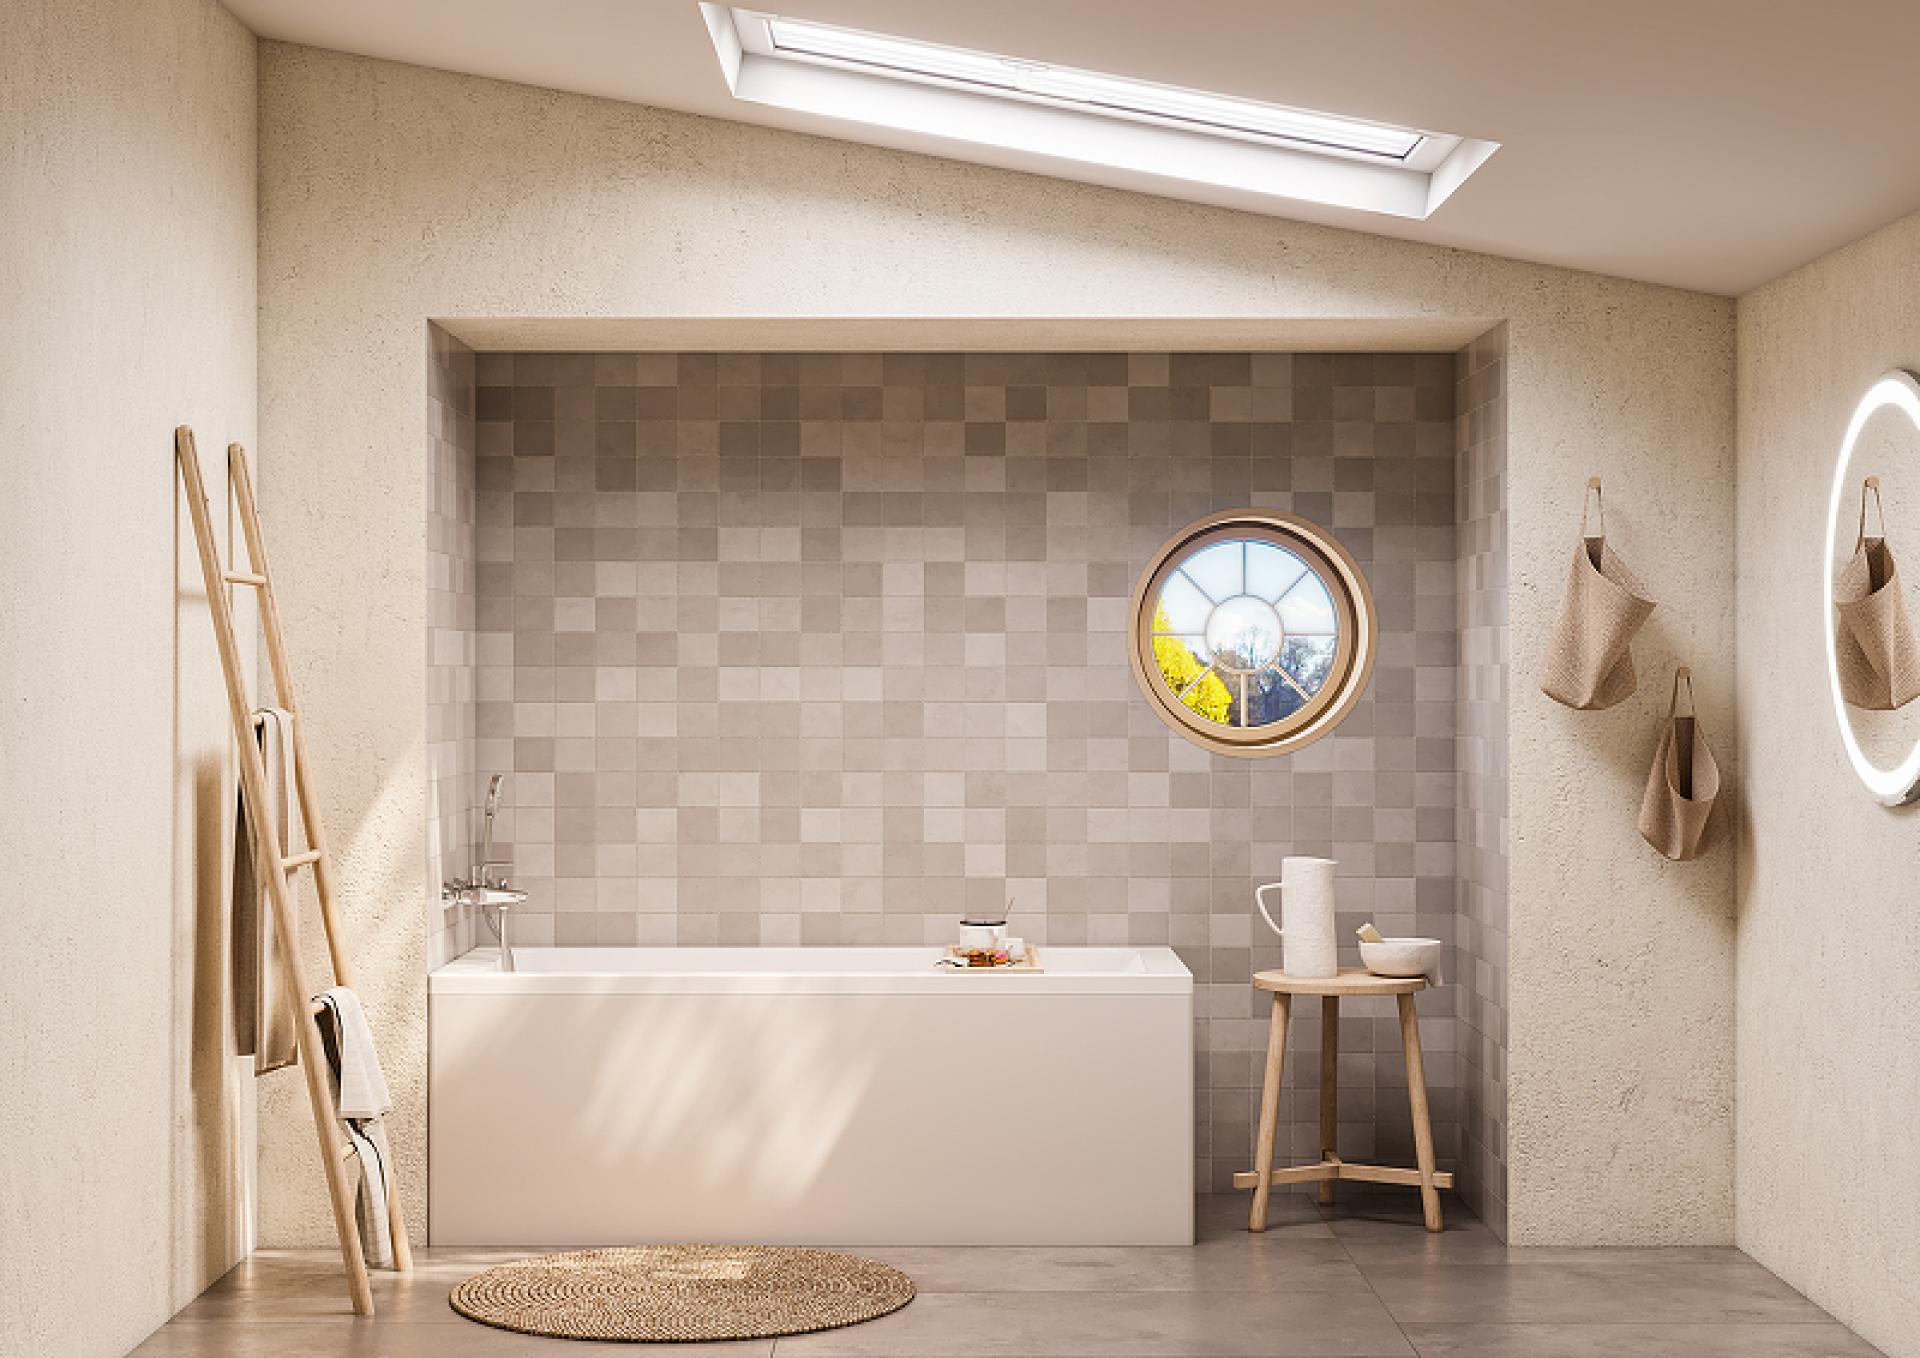 Фото: Фронтальная панель для ванны Roca Leon 150 259144000, белая Roca в каталоге